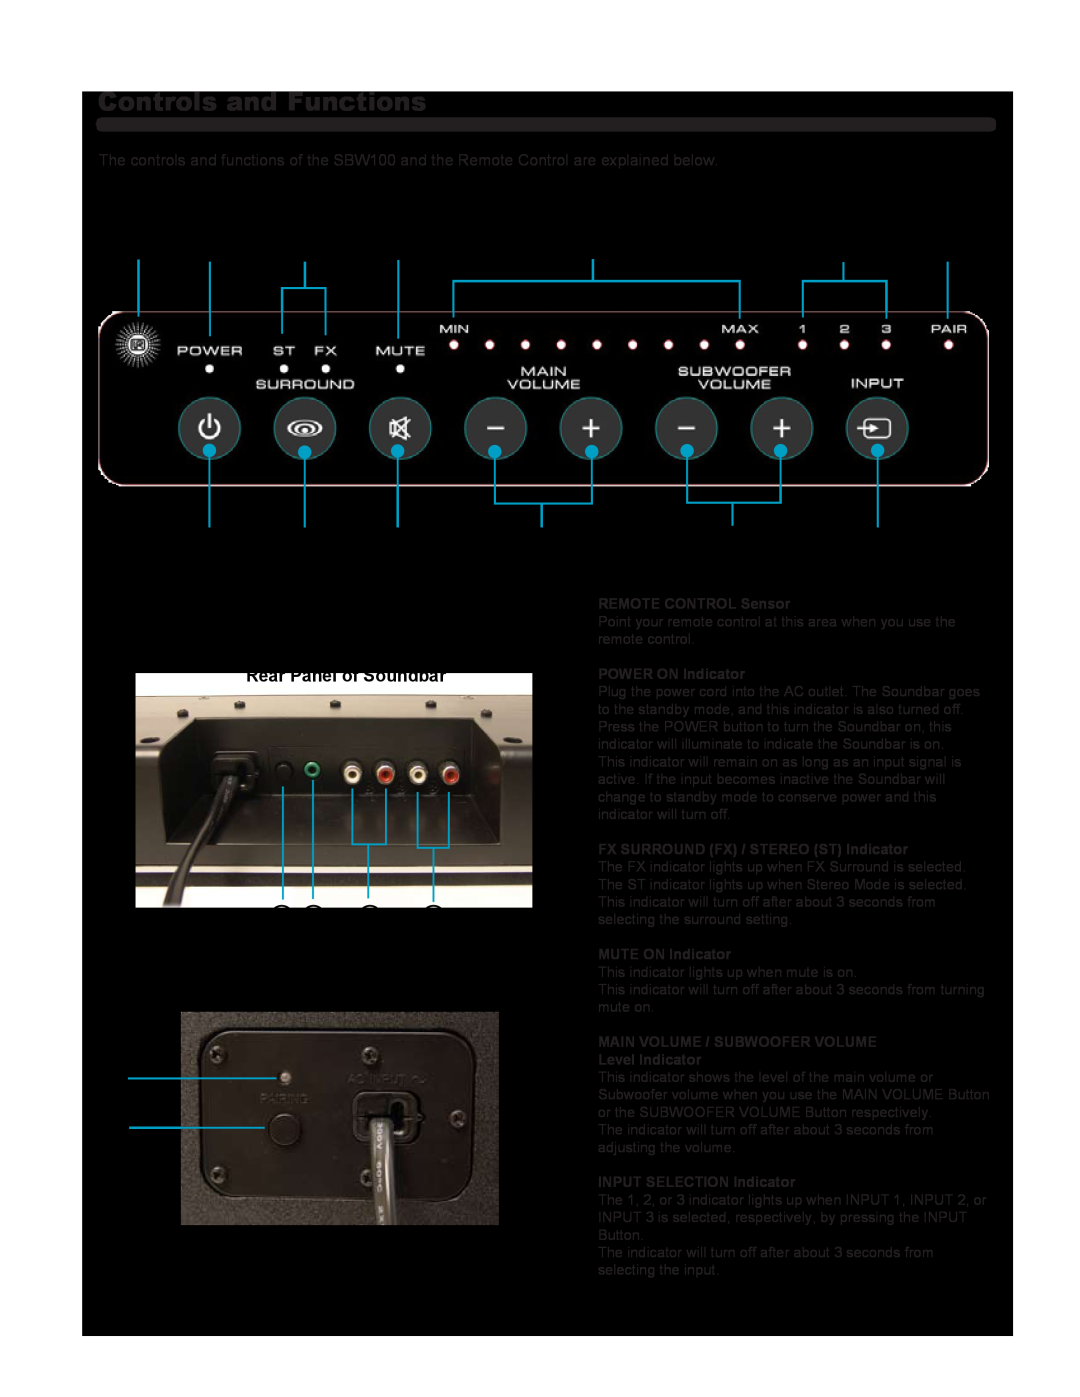 Hitachi SBW100 Controls and Functions, Front Panel Controls / LED Indicators, Rear Panel of Soundbar 